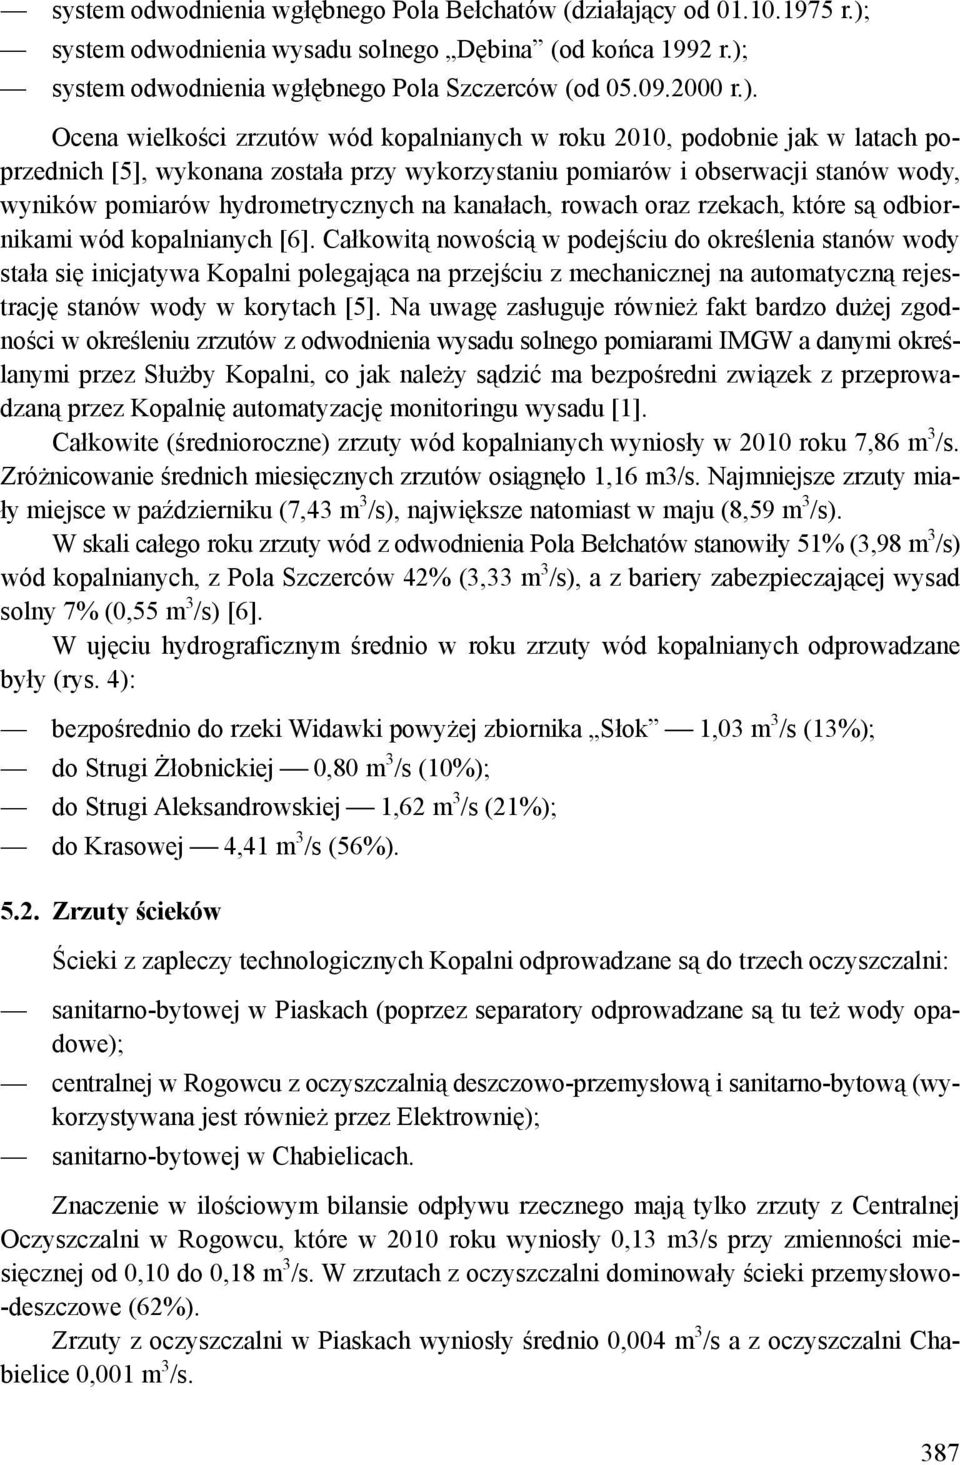 system odwodnienia wgłębnego Pola Szczerców (od 05.09.2000 r.).